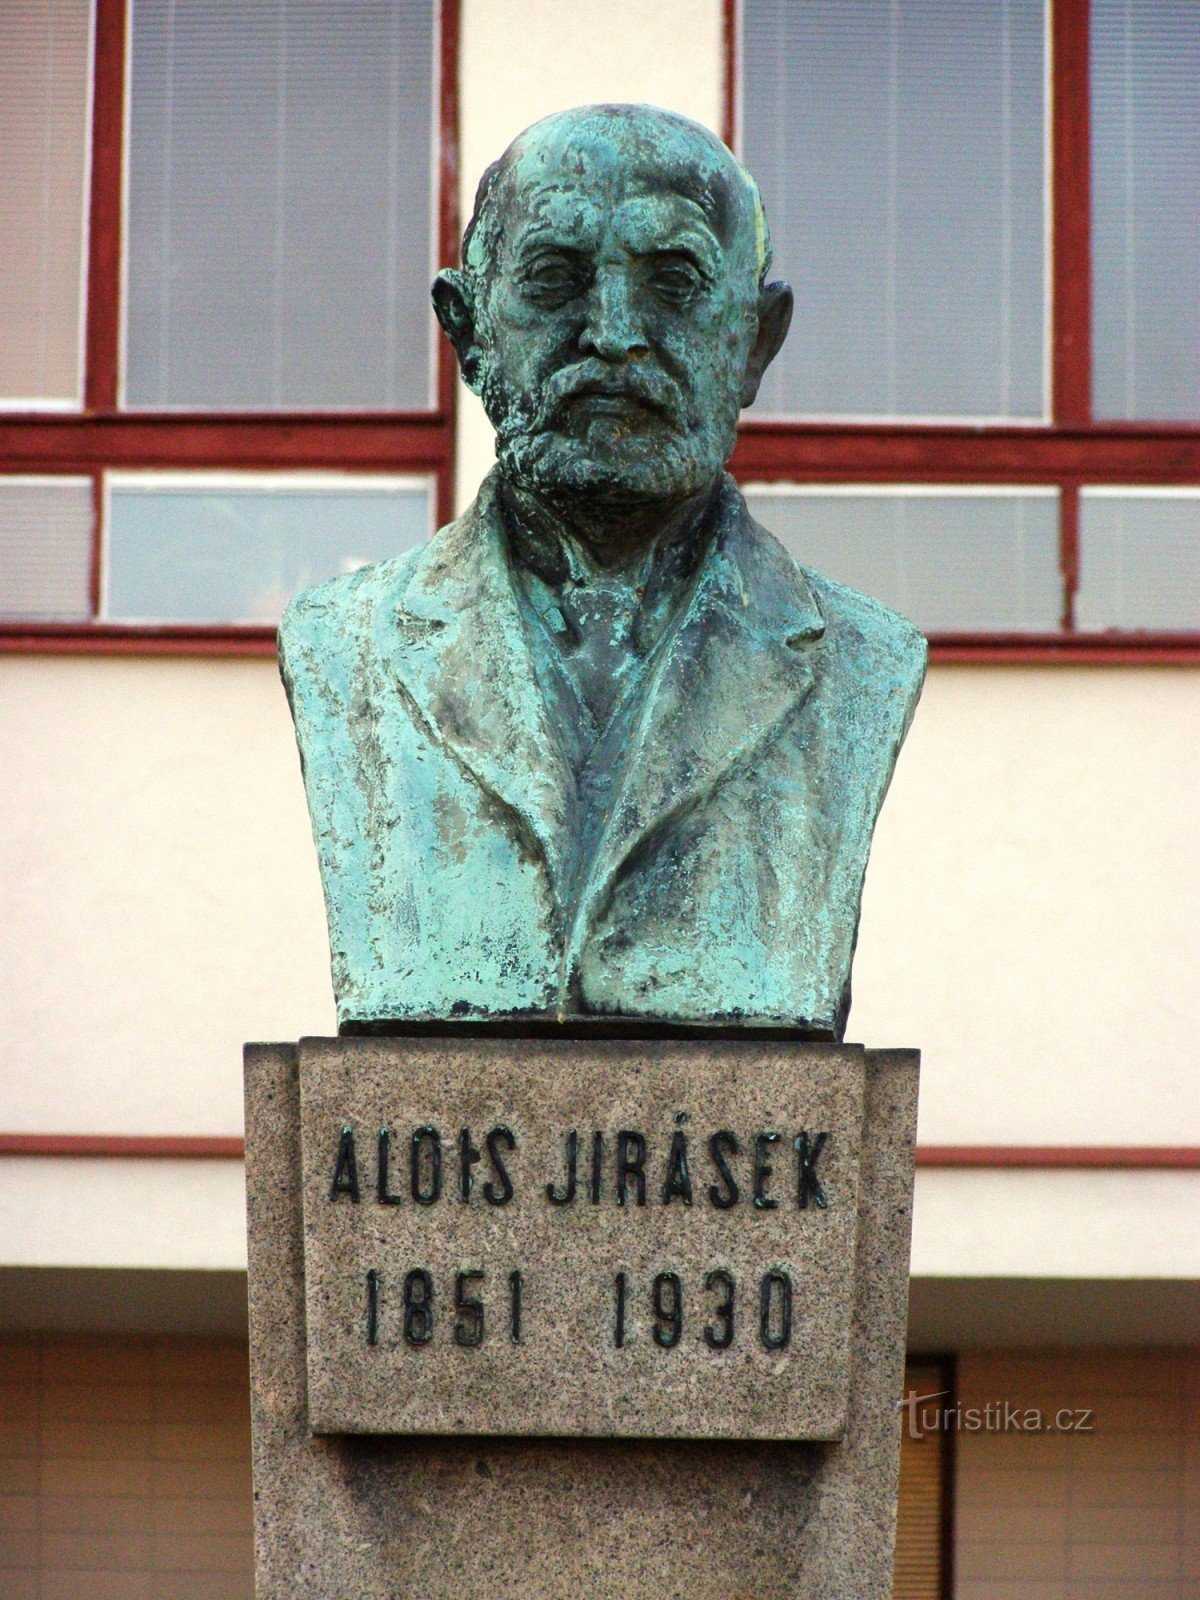 Hradec Králové - Quảng trường Jiráskov